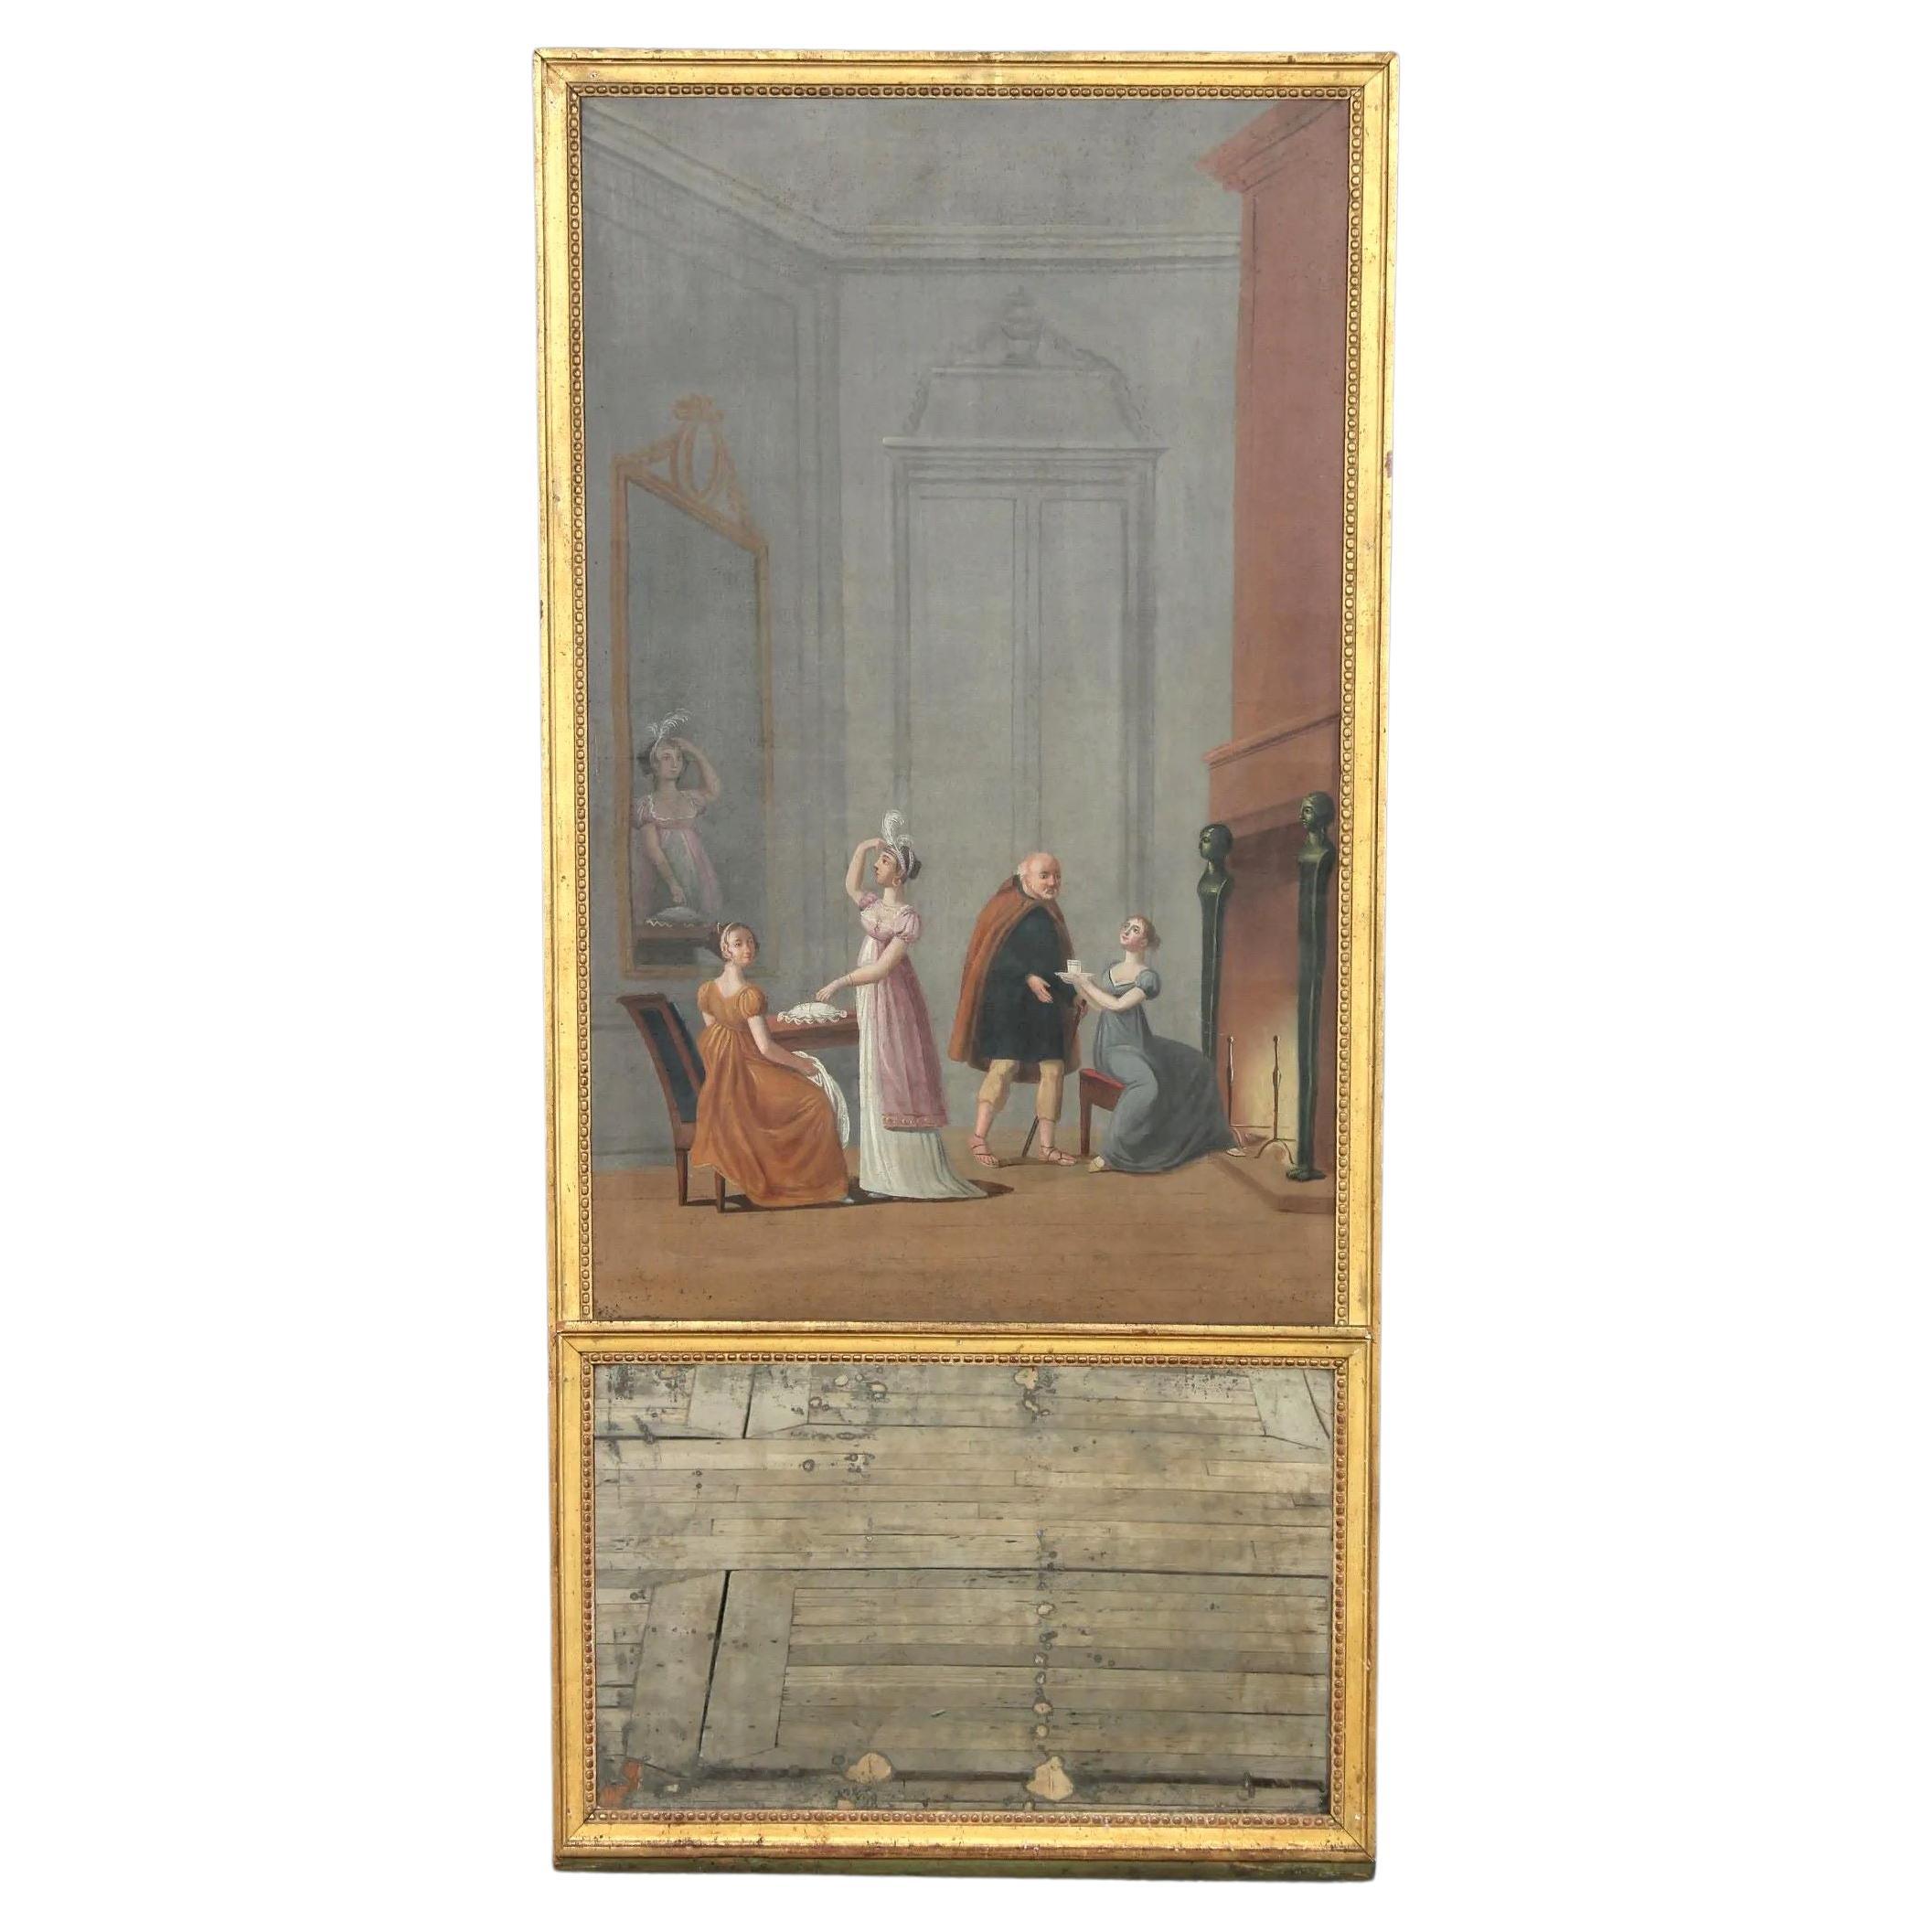 French Directoire Period Trumeau Mirror, Interior Scene, Circa 1800